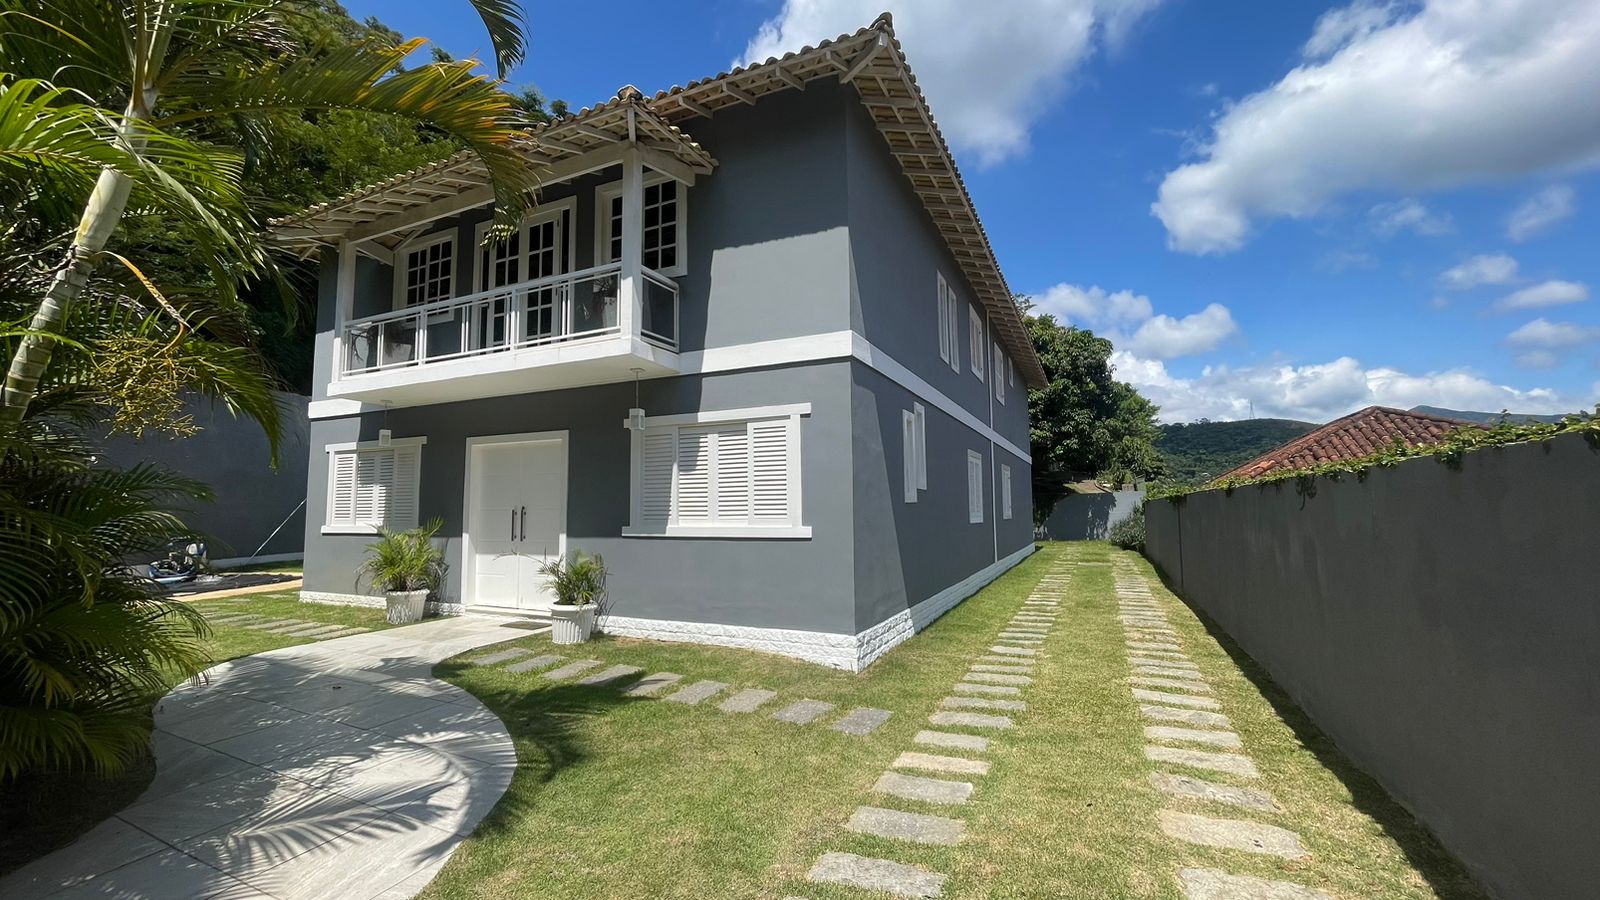 Casa em condomínio - Venda, Nogueira, Petrópolis, RJ